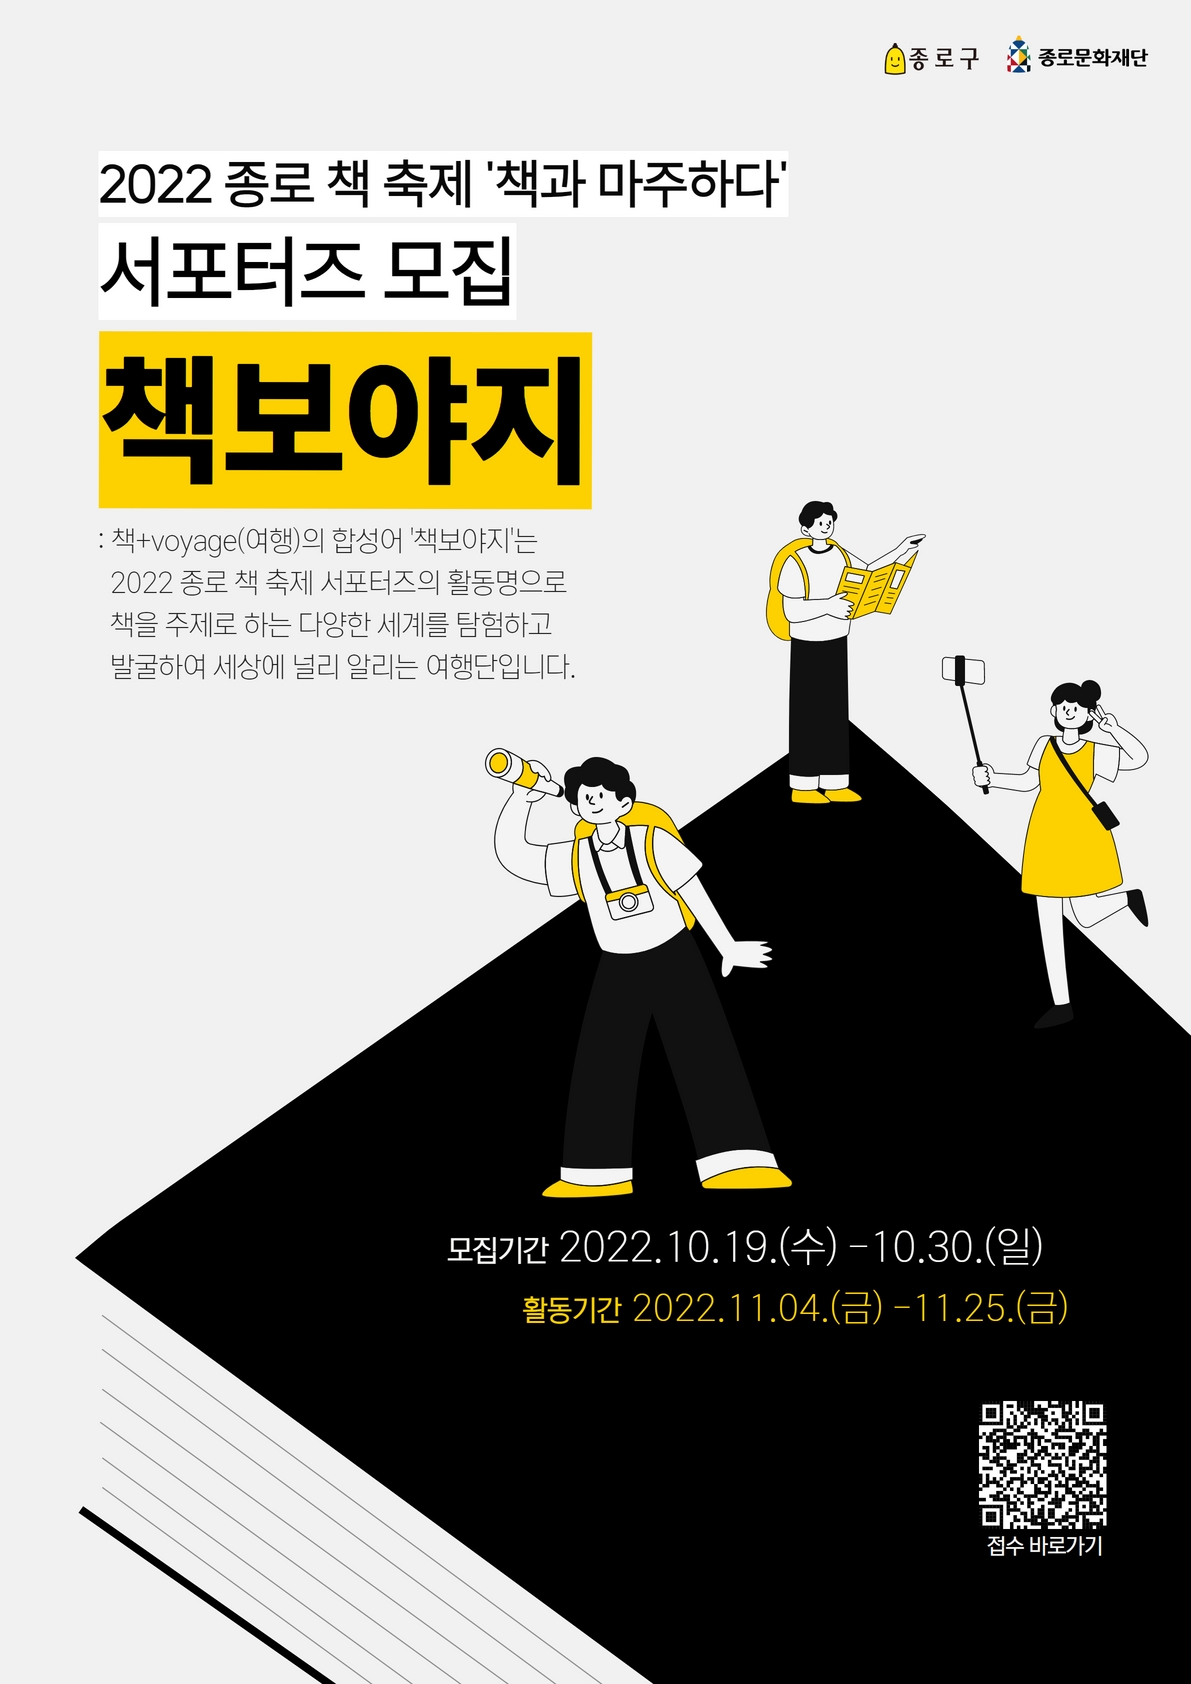 2022 종로 책 축제 홍보 서포터즈 "책보야지" 모집